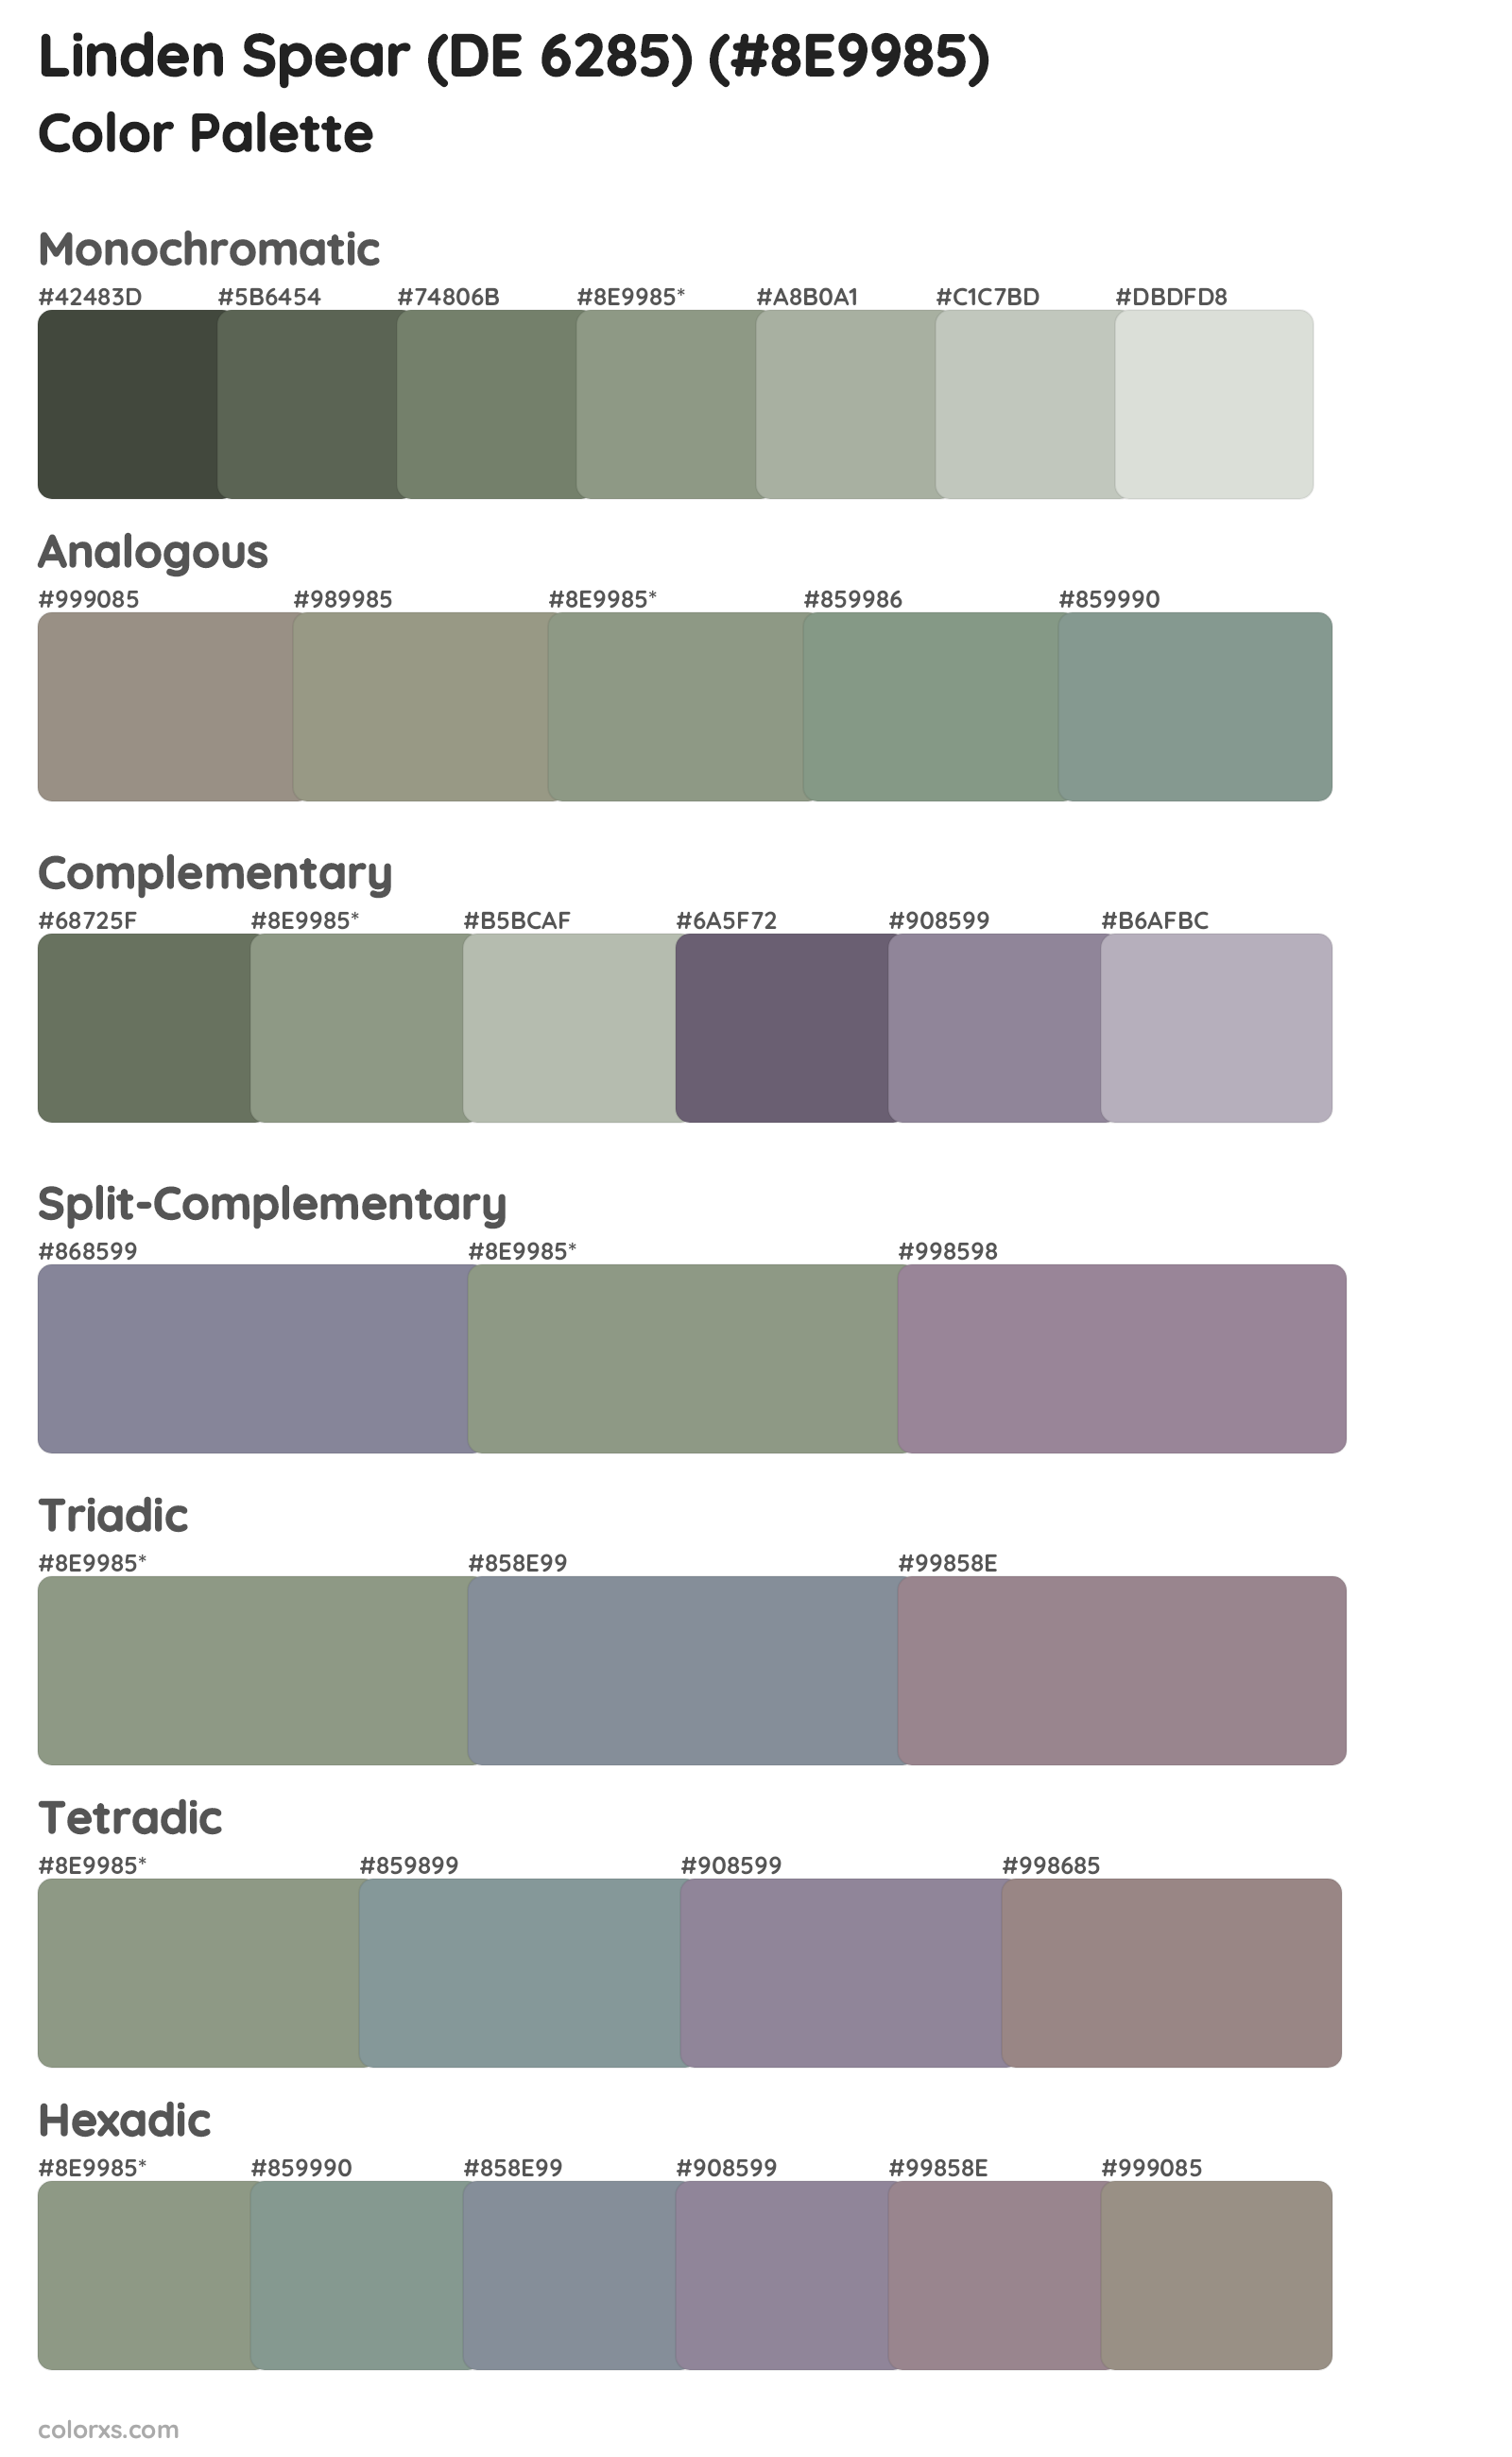 Linden Spear (DE 6285) Color Scheme Palettes